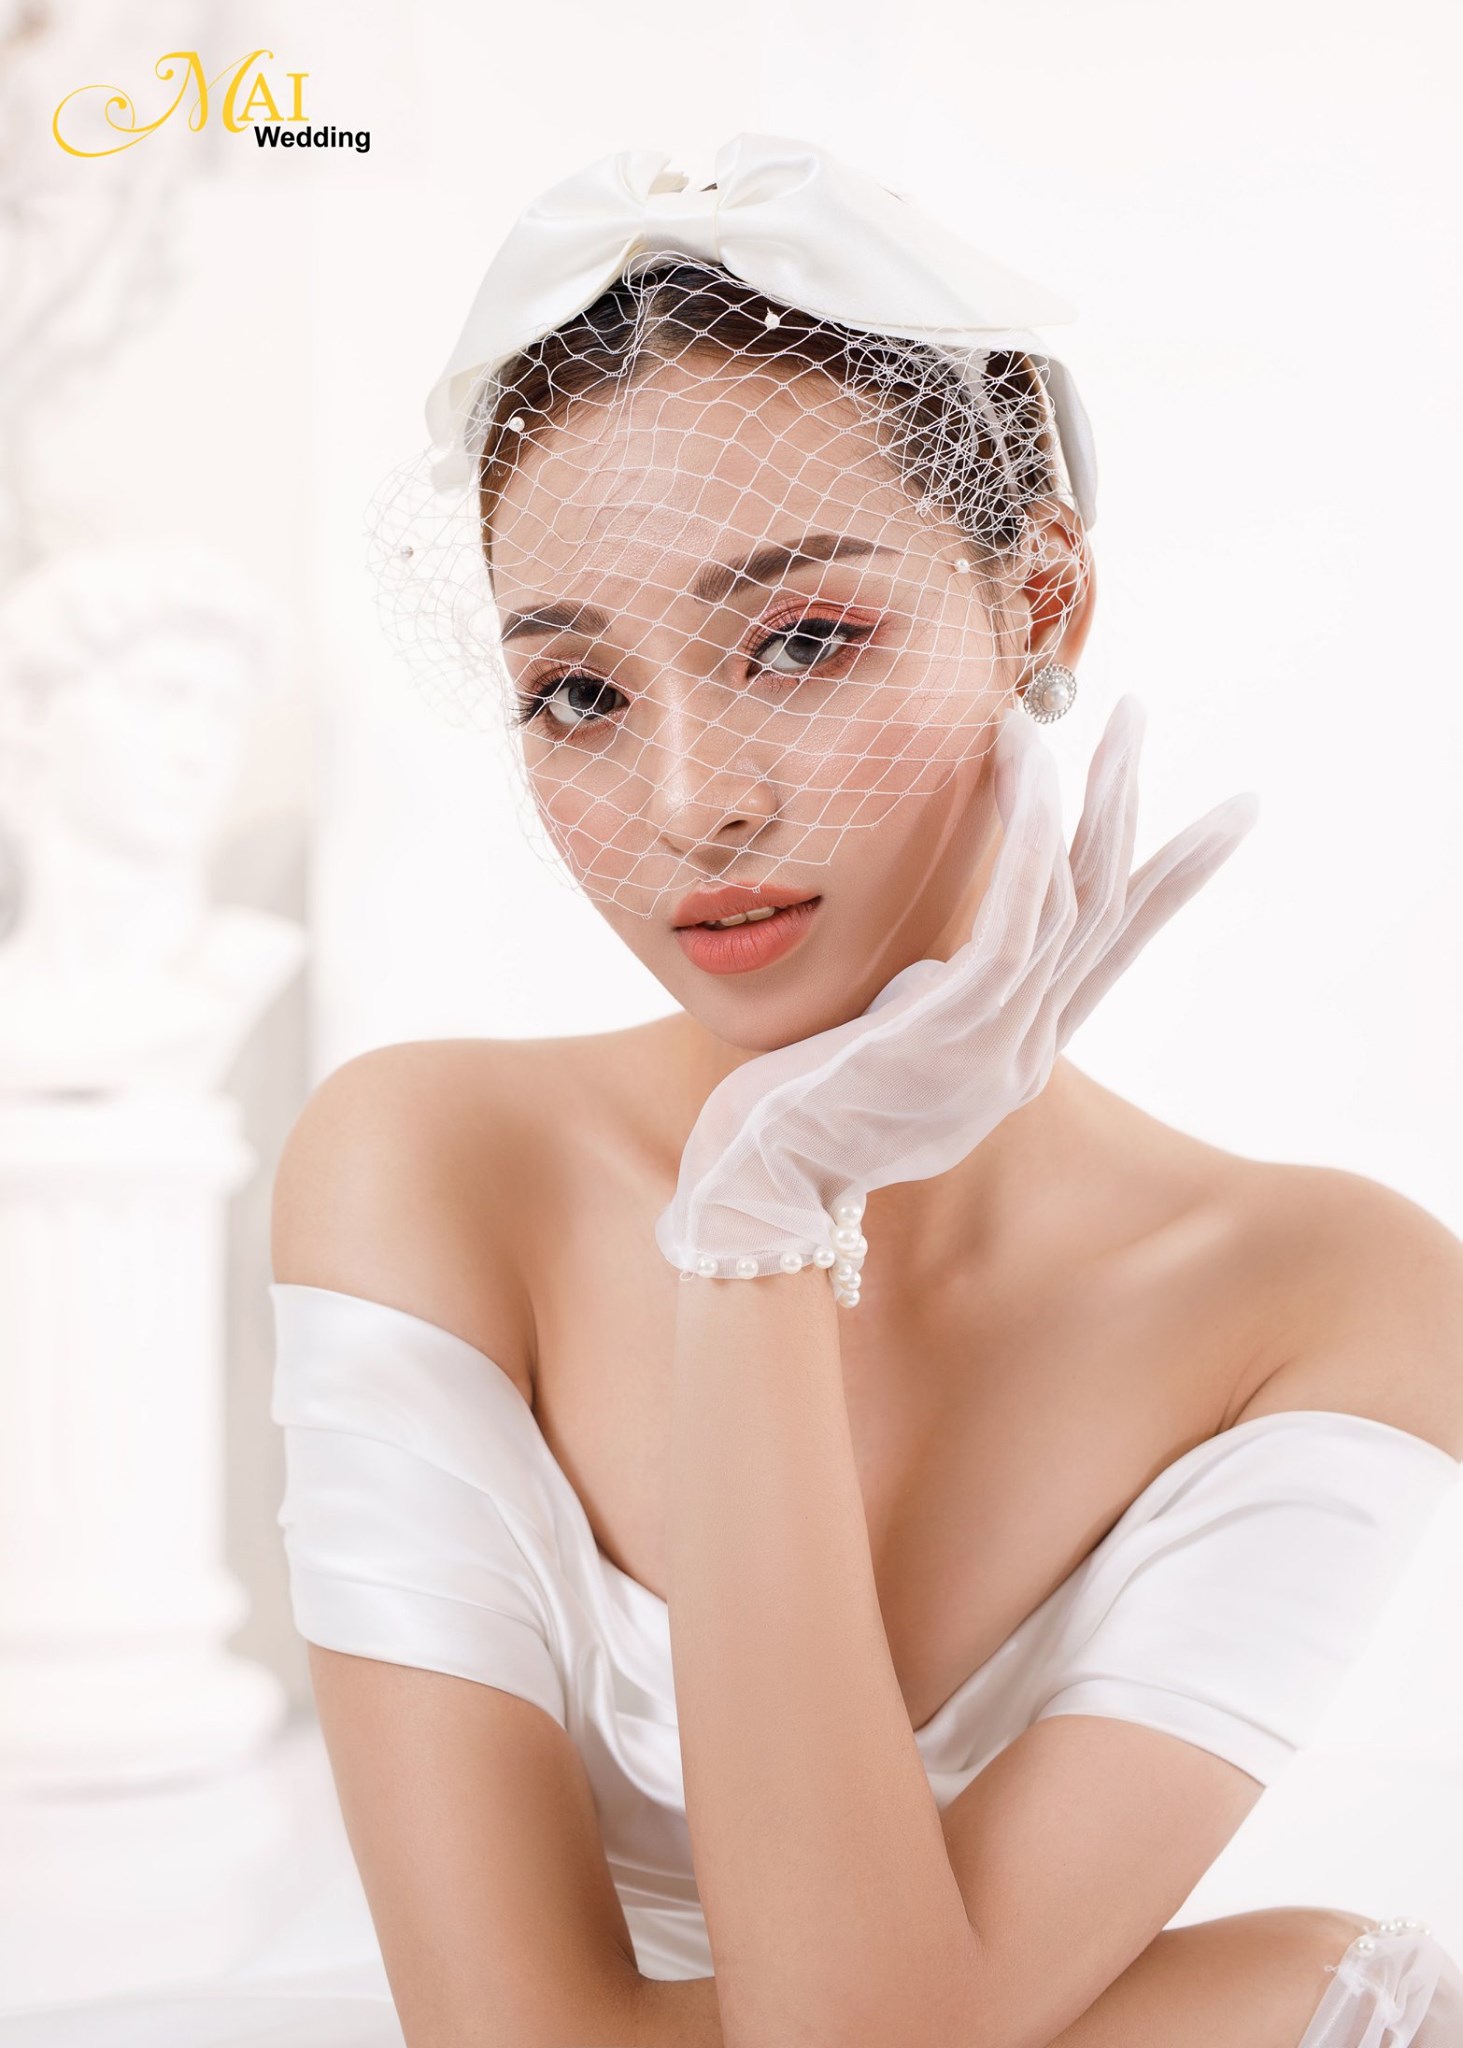 Top 7 tiệm trang điểm cô dâu đẹp nhất tại Đà Nẵng -  Mai Wedding